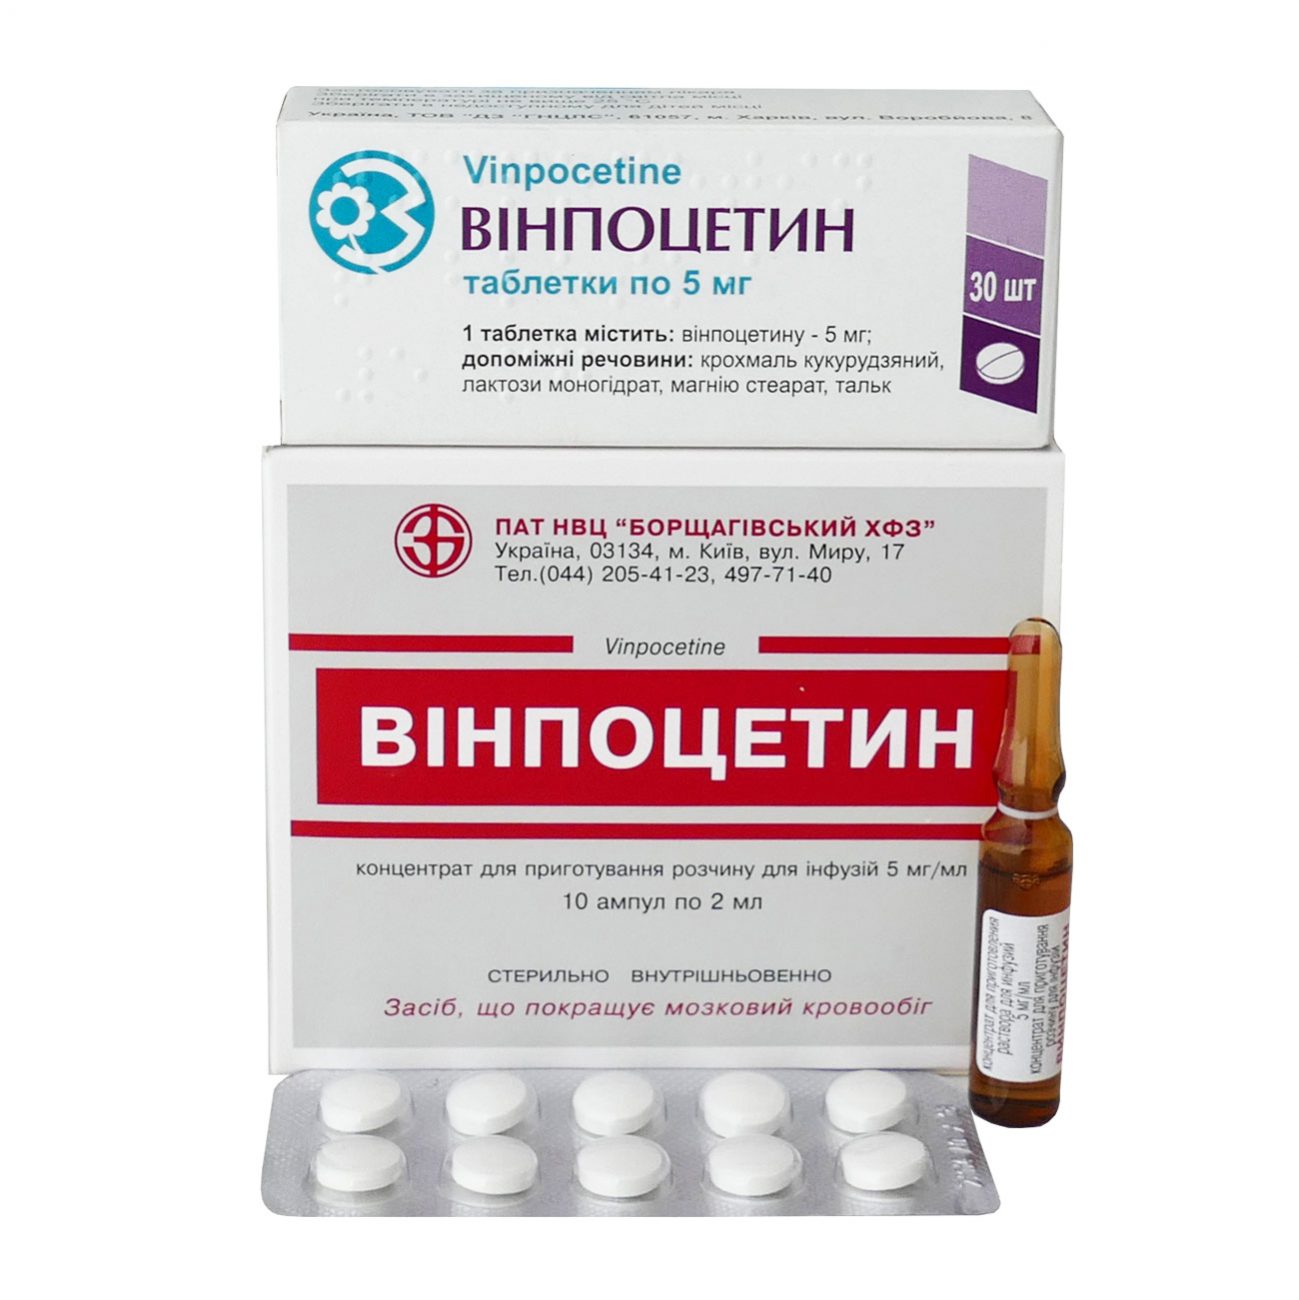 Винпоцетин и Винпоцетин Форте - таблетки и ампулы: инструкция, цена и .